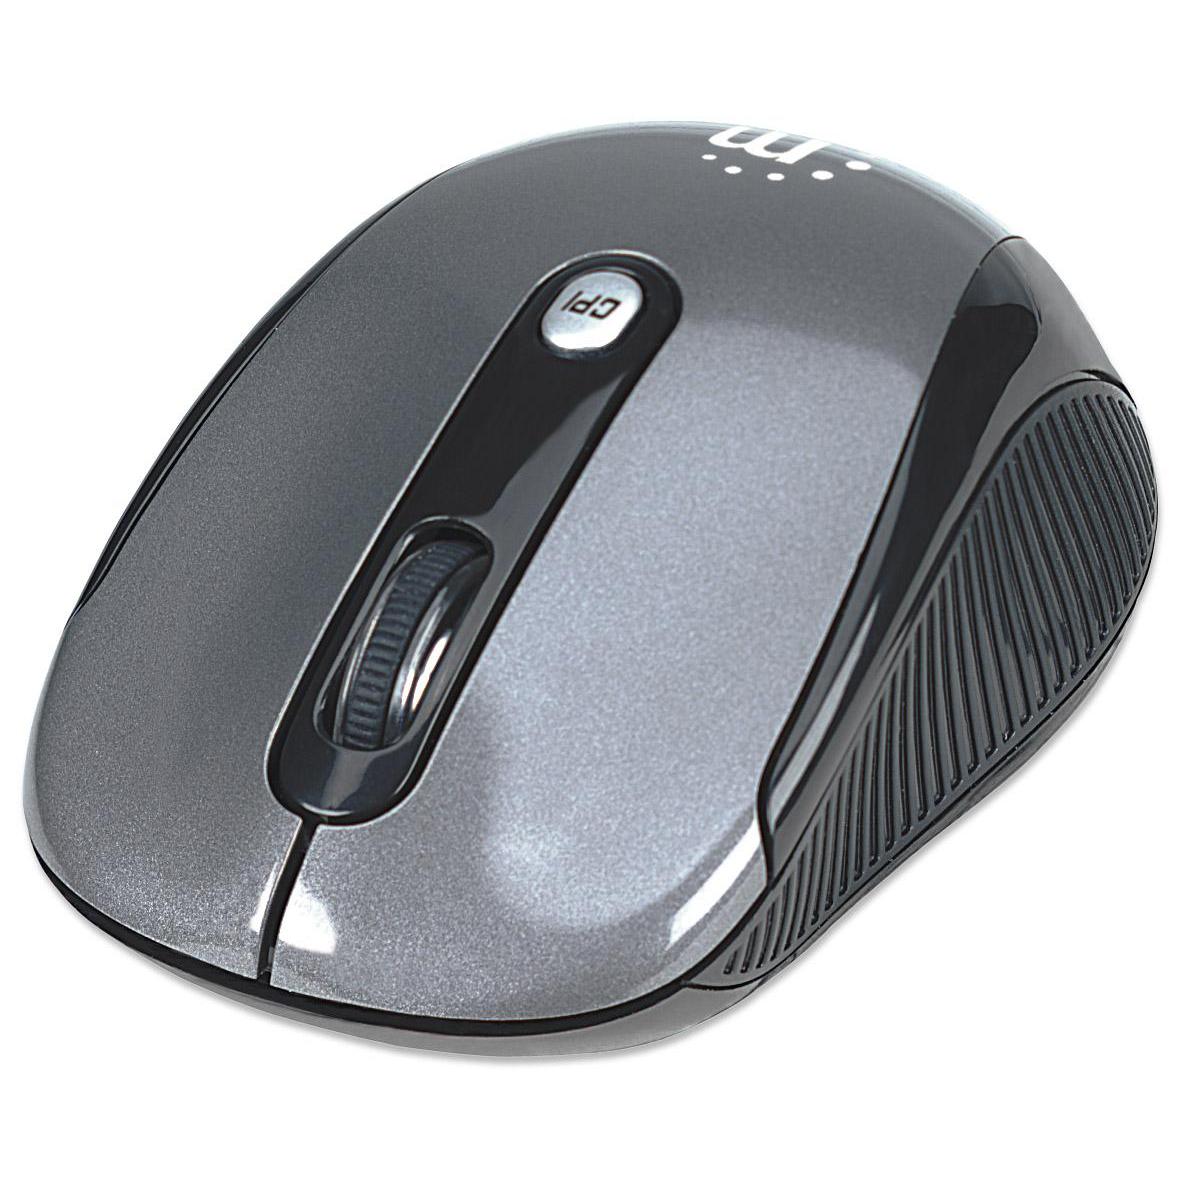 Mouse Ottico Wireless dalle elevate prestazioni